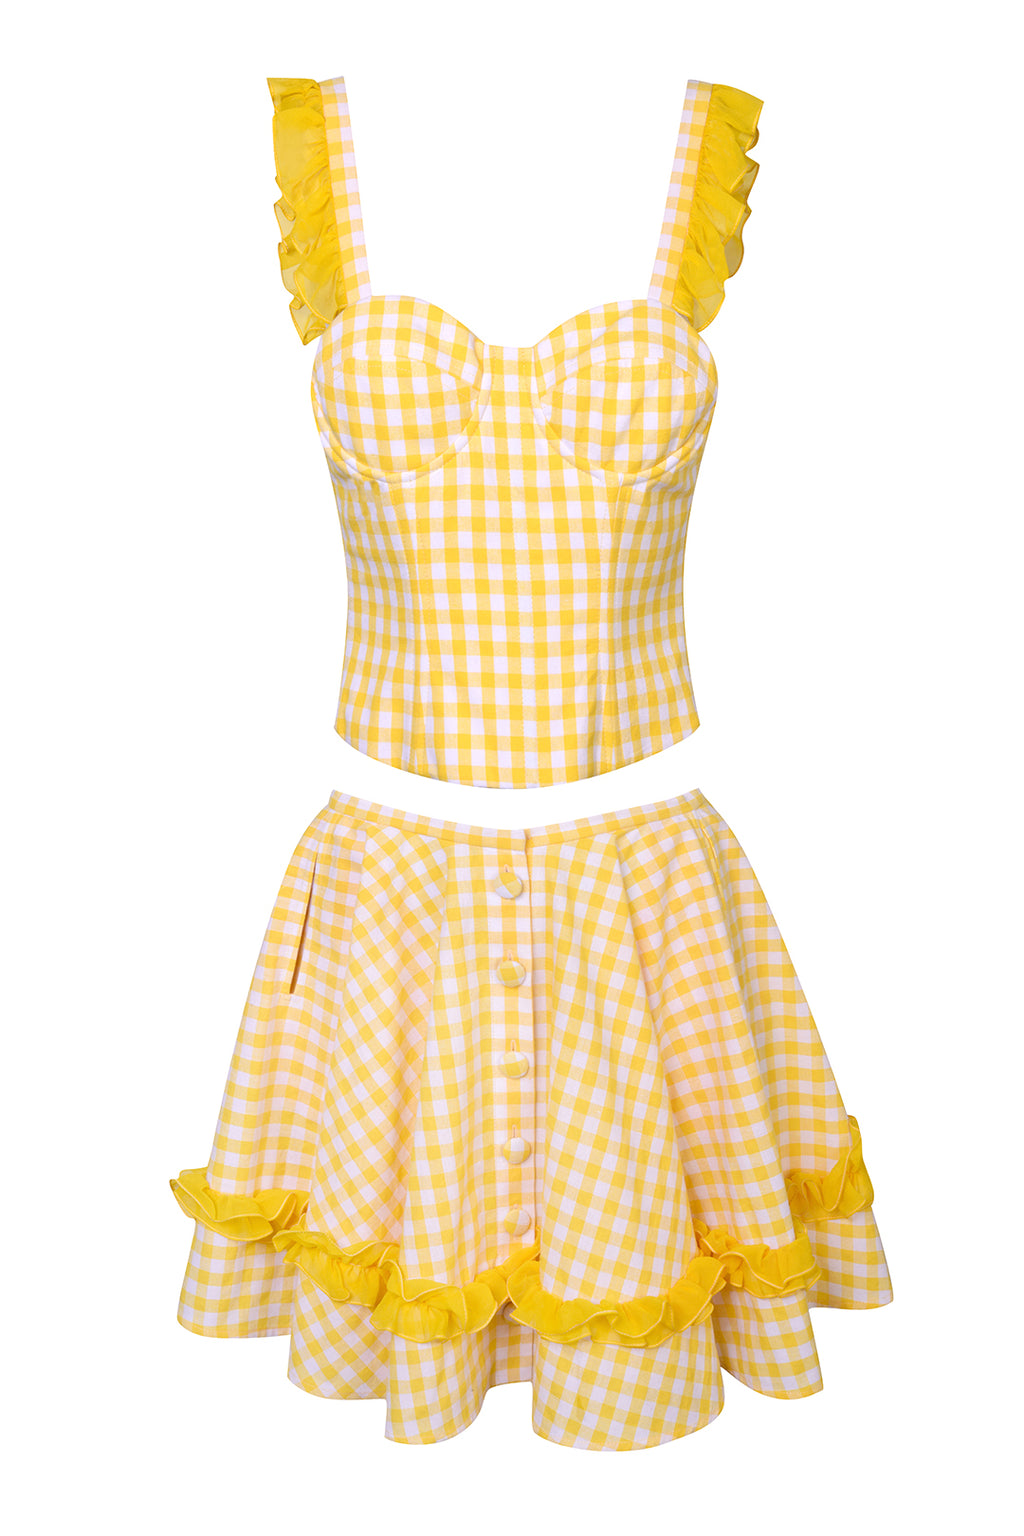 Checkered Ruffle Yellow Mini Skirt